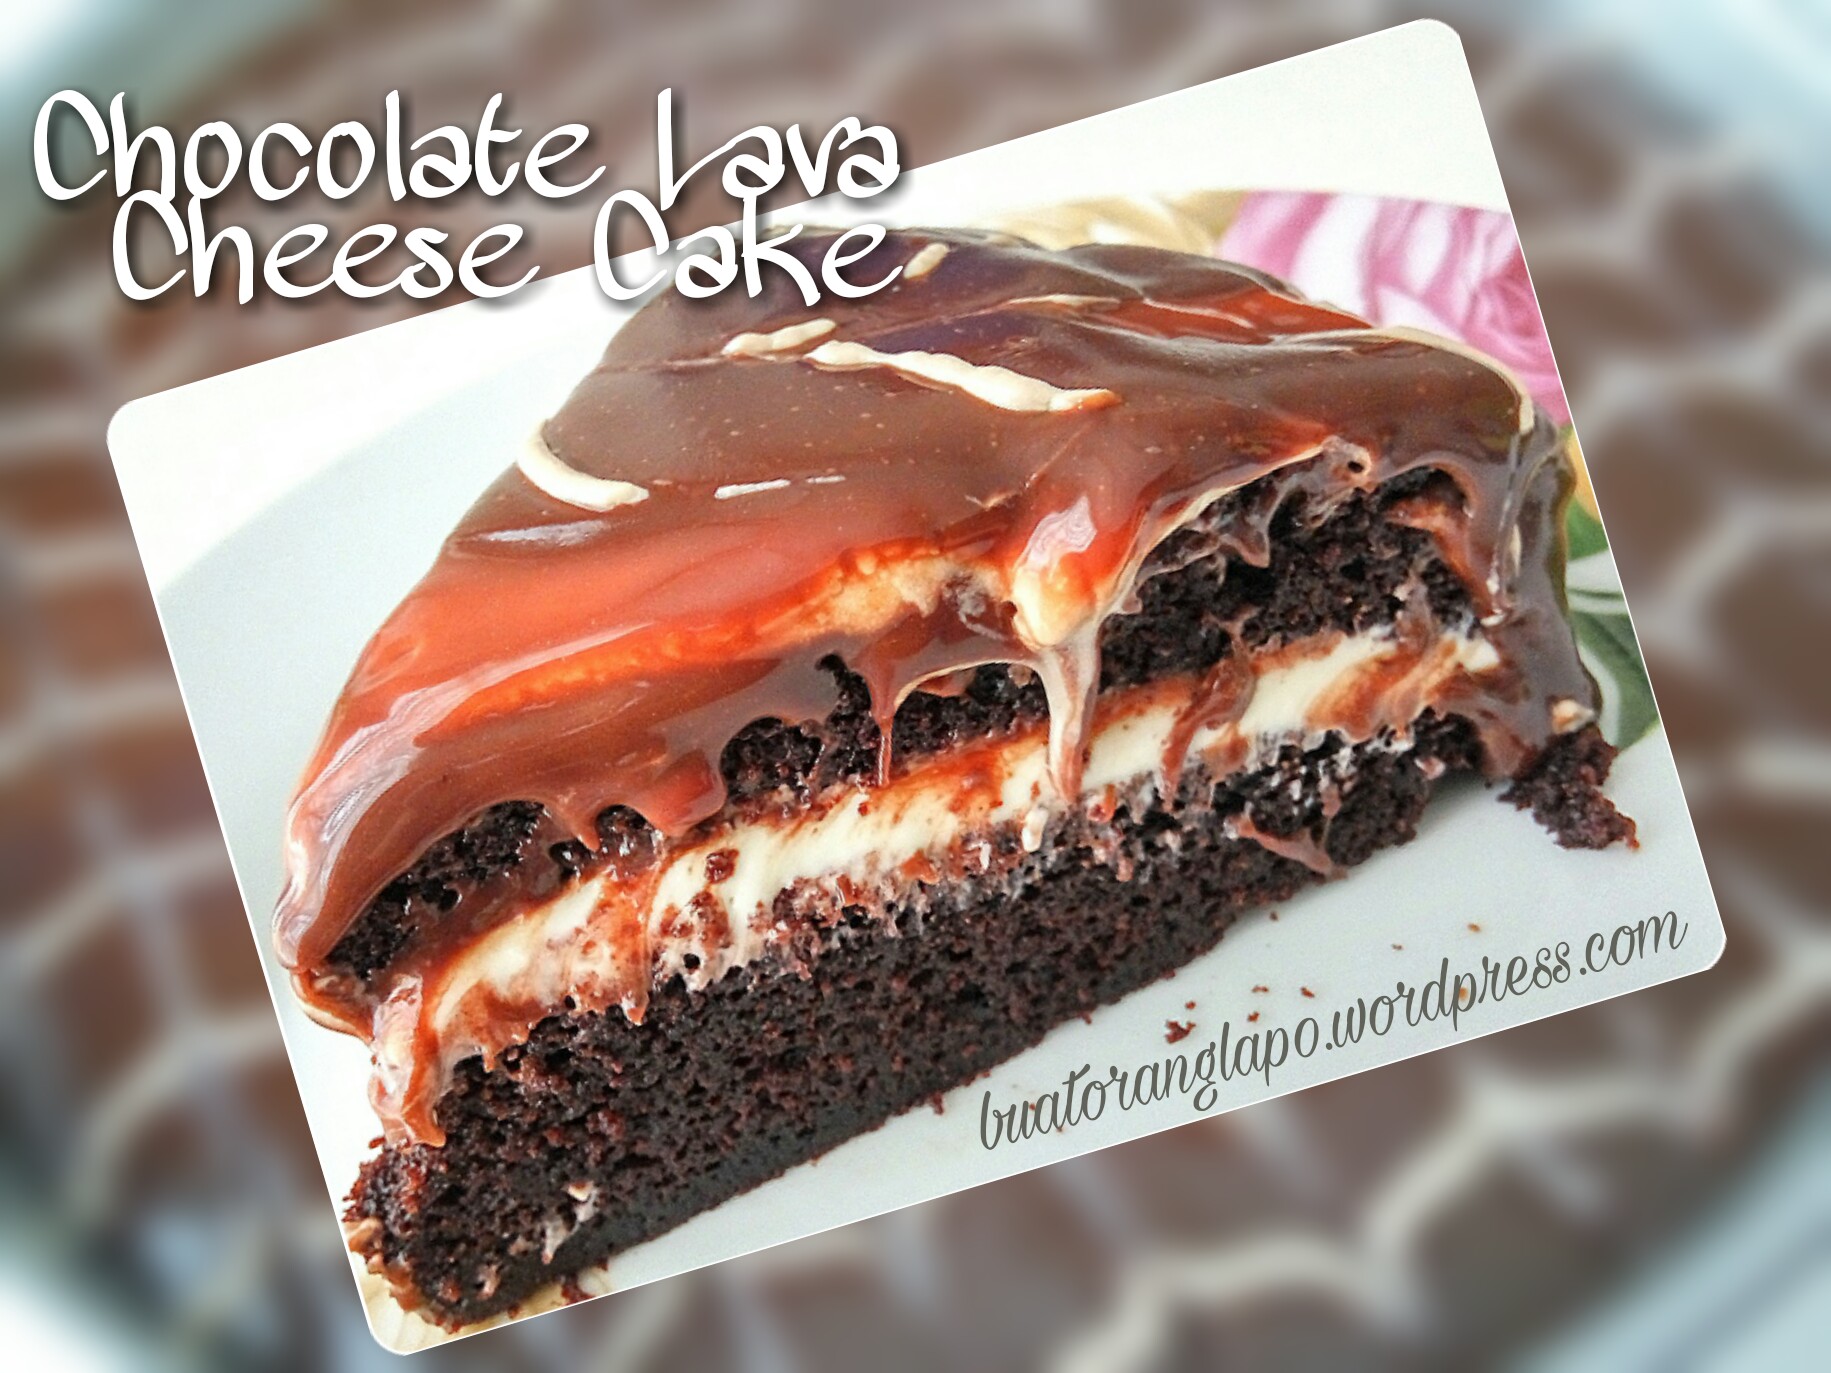 Chocolate Lava Cheese Cake a.k.a Kek Hantu - Buat Orang Lapo